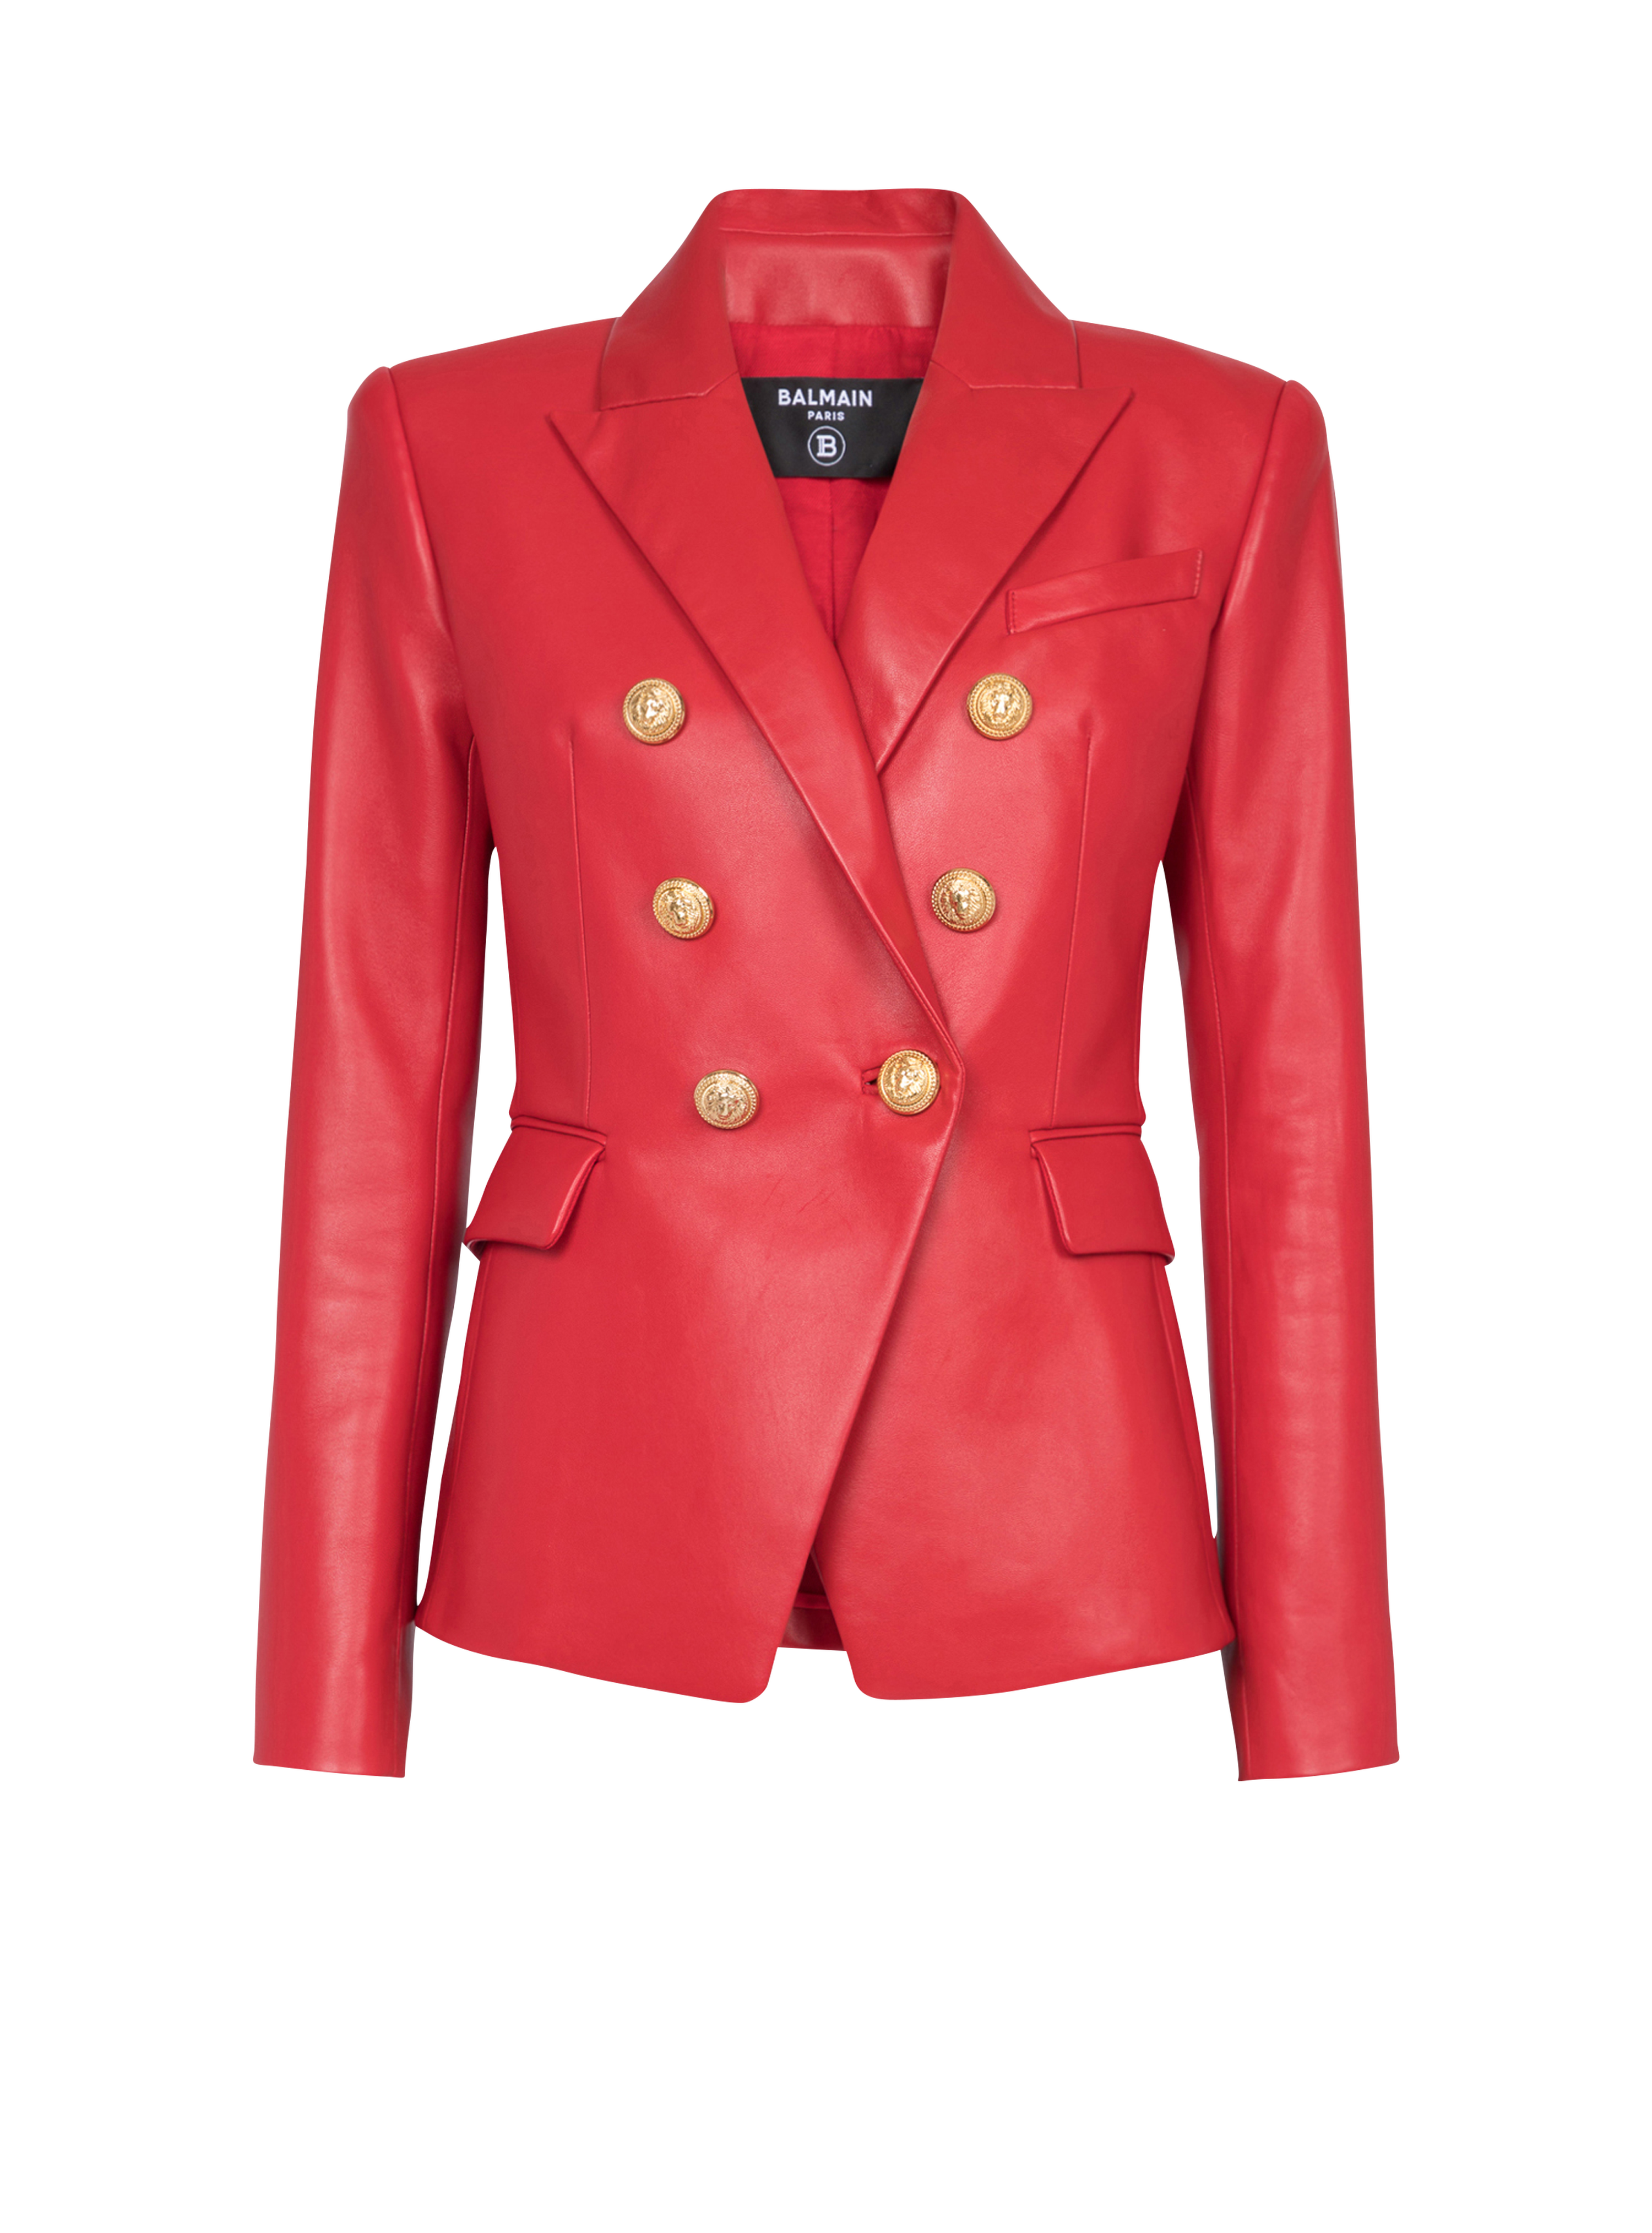 皮革双排扣夹克, red